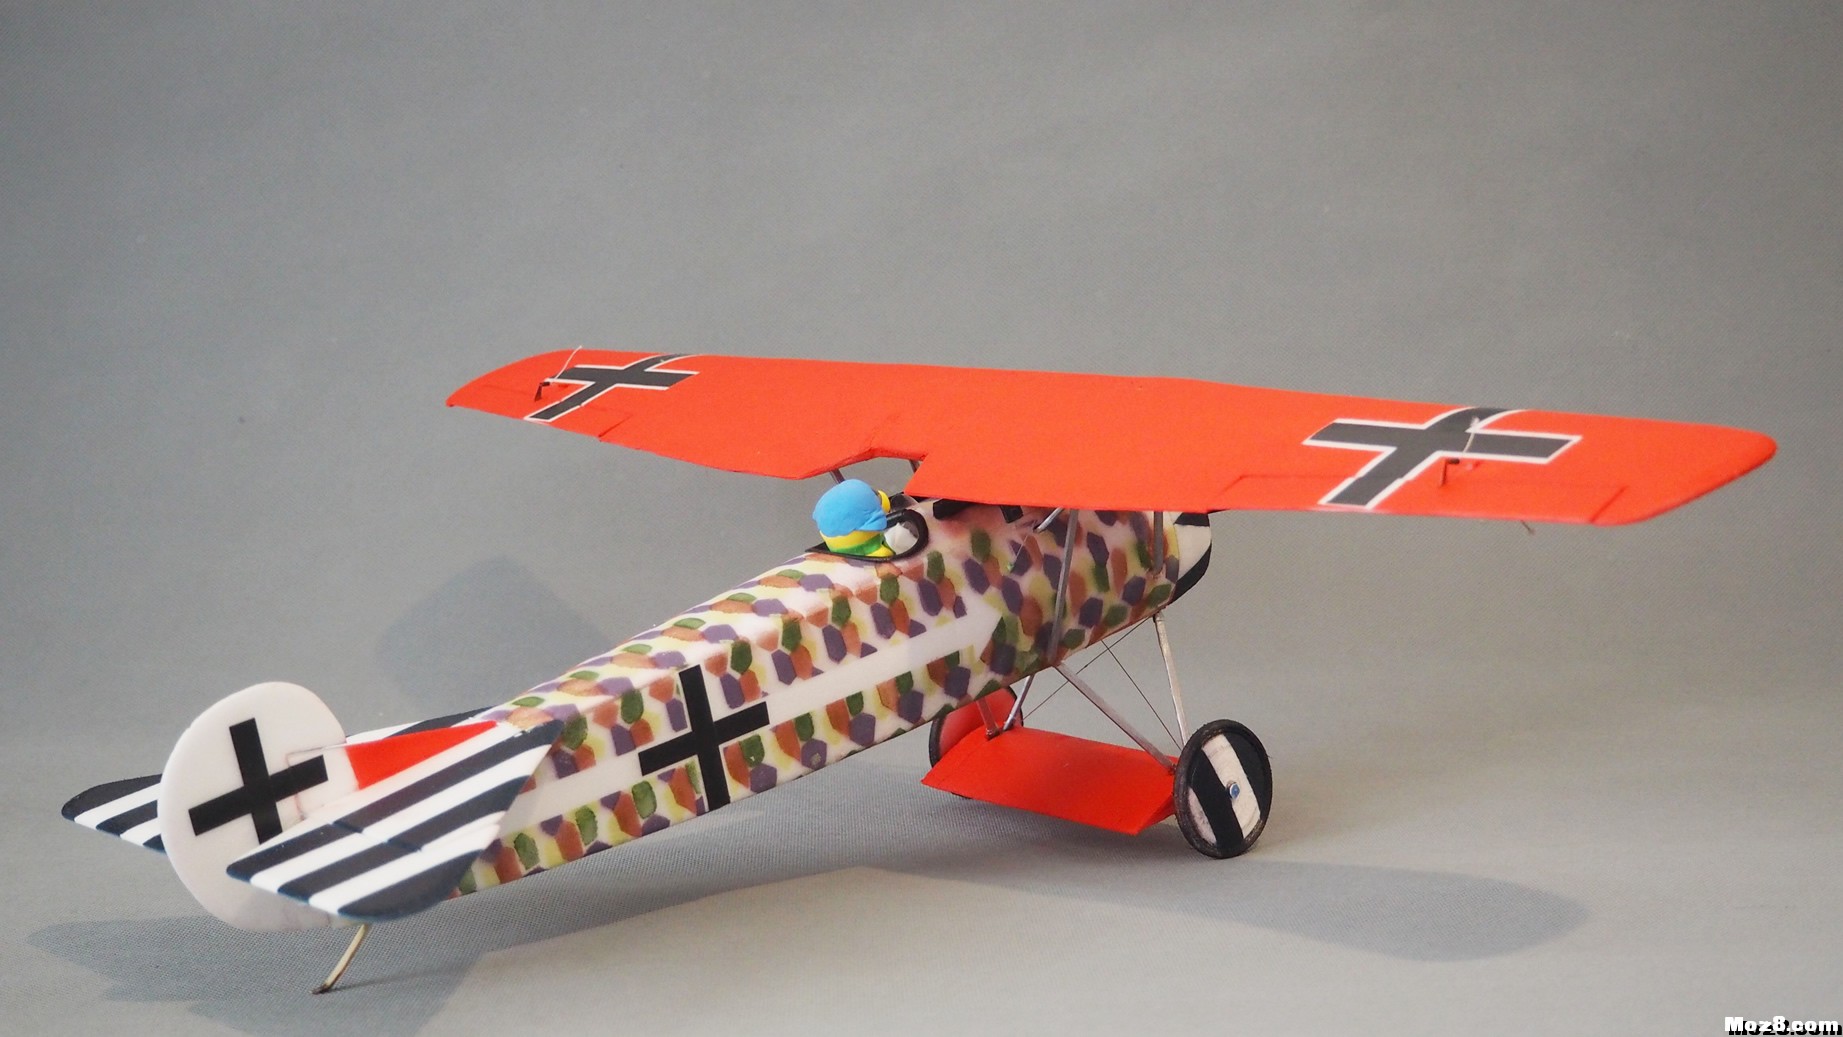 【爱因制造】迷你Fokker D-VIII战机 舵机,接收机,空心杯,bilibili,视频 作者:xbnlkdbxl 2177 